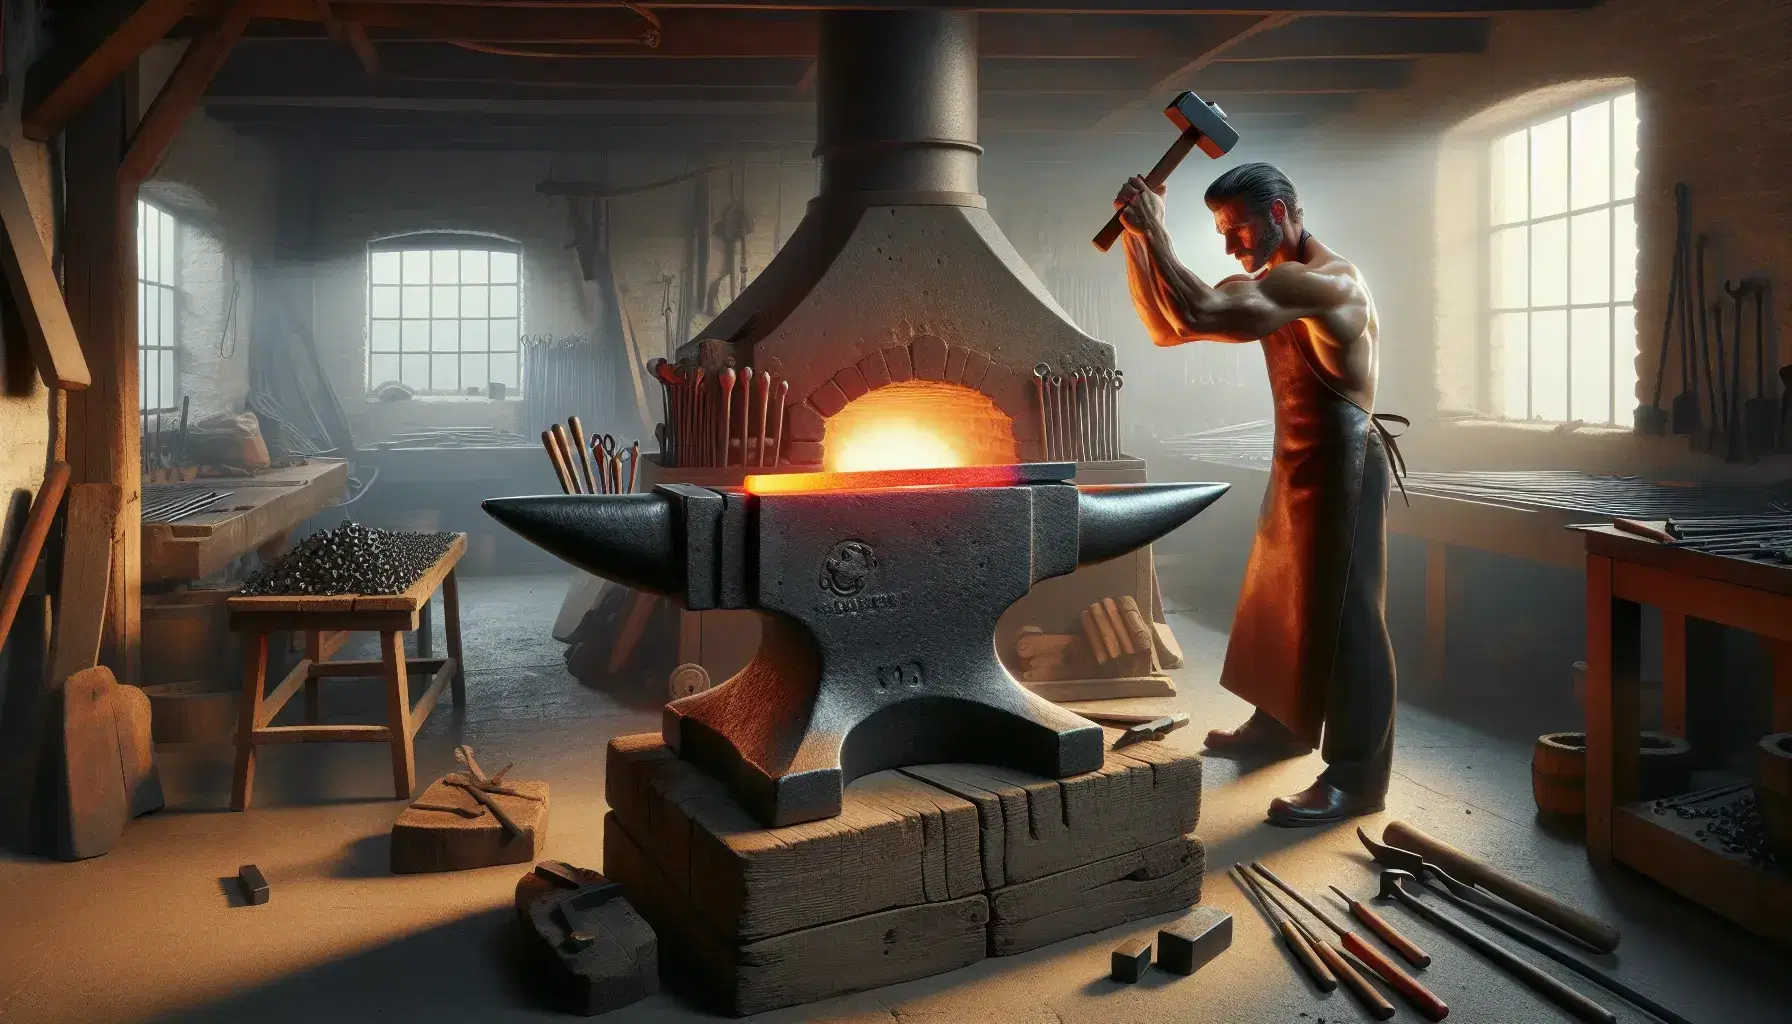 Herrero en forja tradicional preparándose para golpear barra de metal al rojo vivo sobre yunque, con fuego de fragua al fondo.